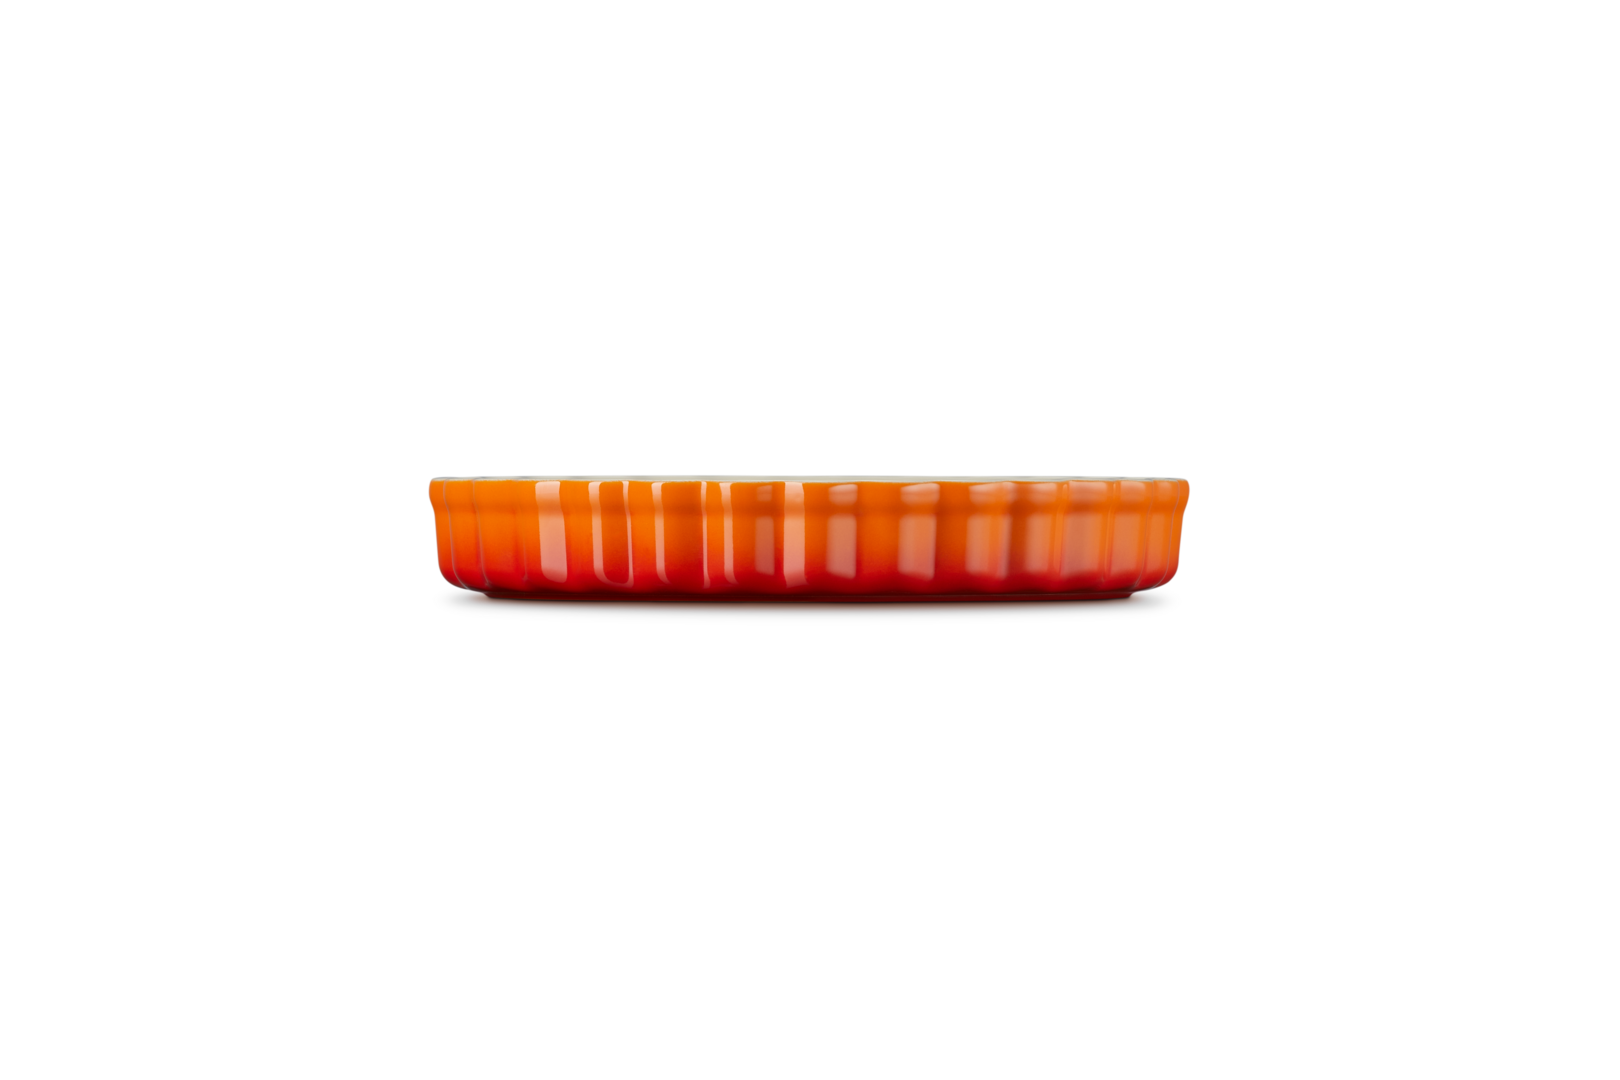 Arancione Gres vetrificato 1.82 kg Le Creuset Tradition Tortiera rotonda diametro 28 cm 